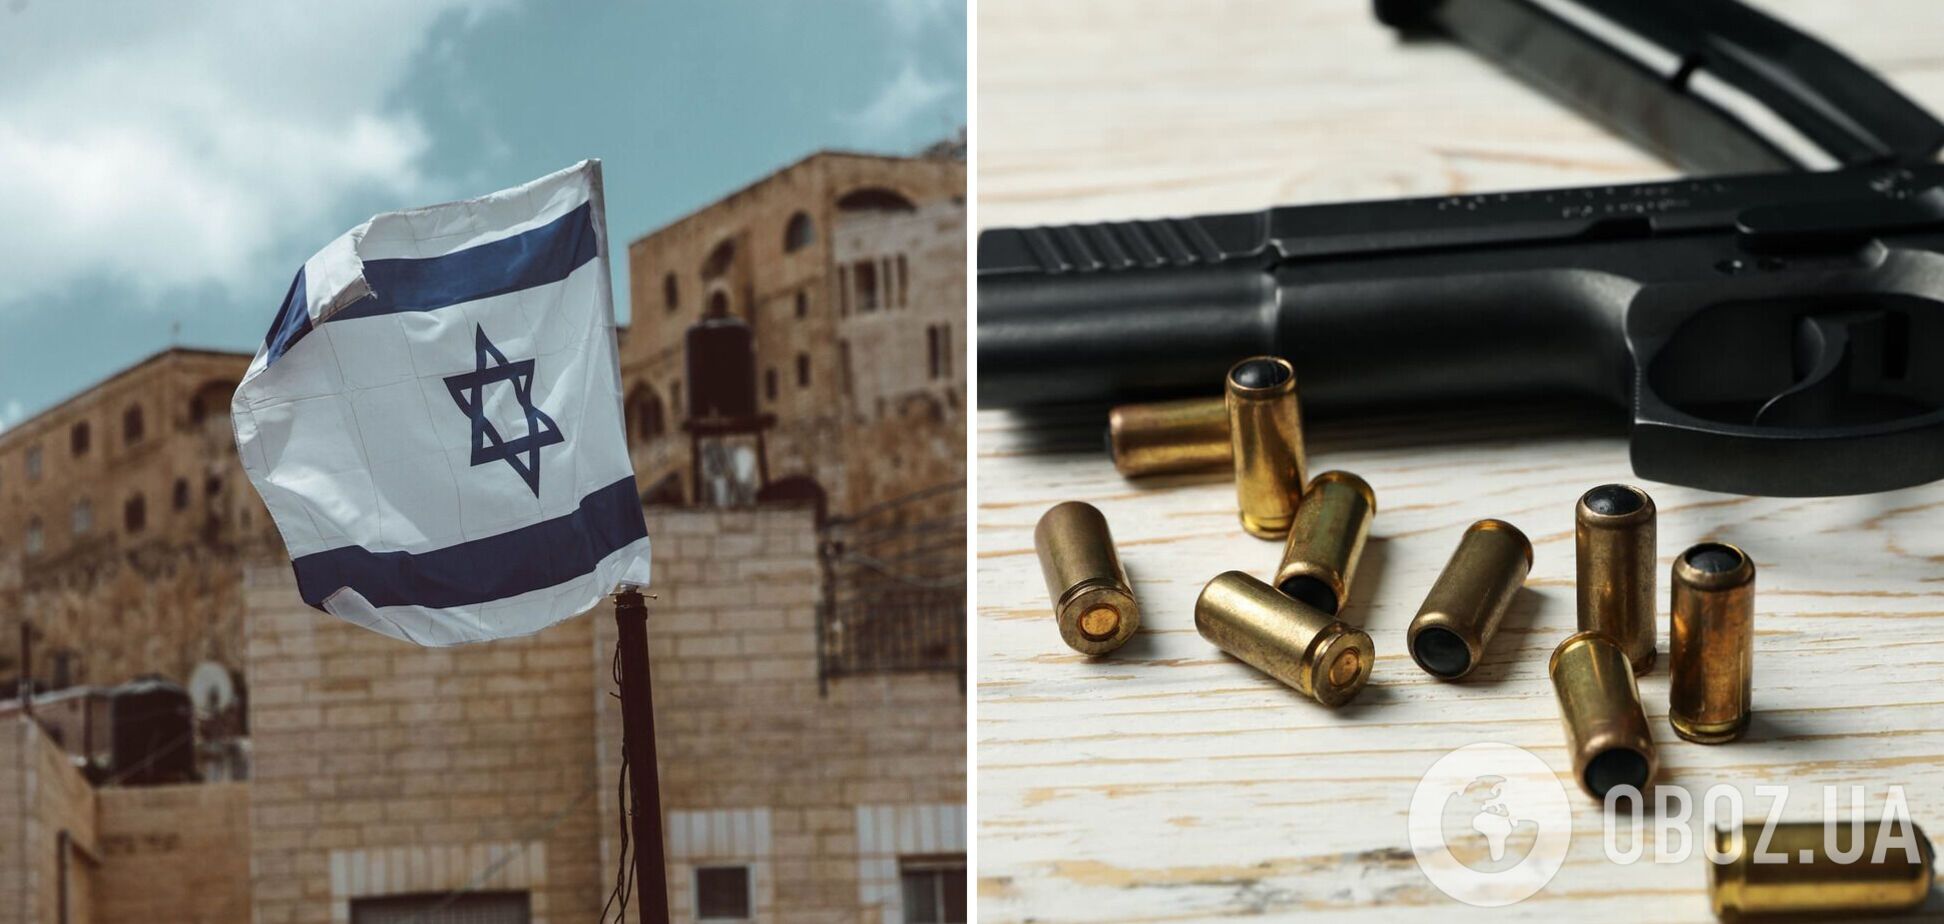 Після теракту в Єрусалимі в Ізраїлі заговорили про послаблення вимог щодо володіння зброєю для цивільних – The Jerusalem Post 